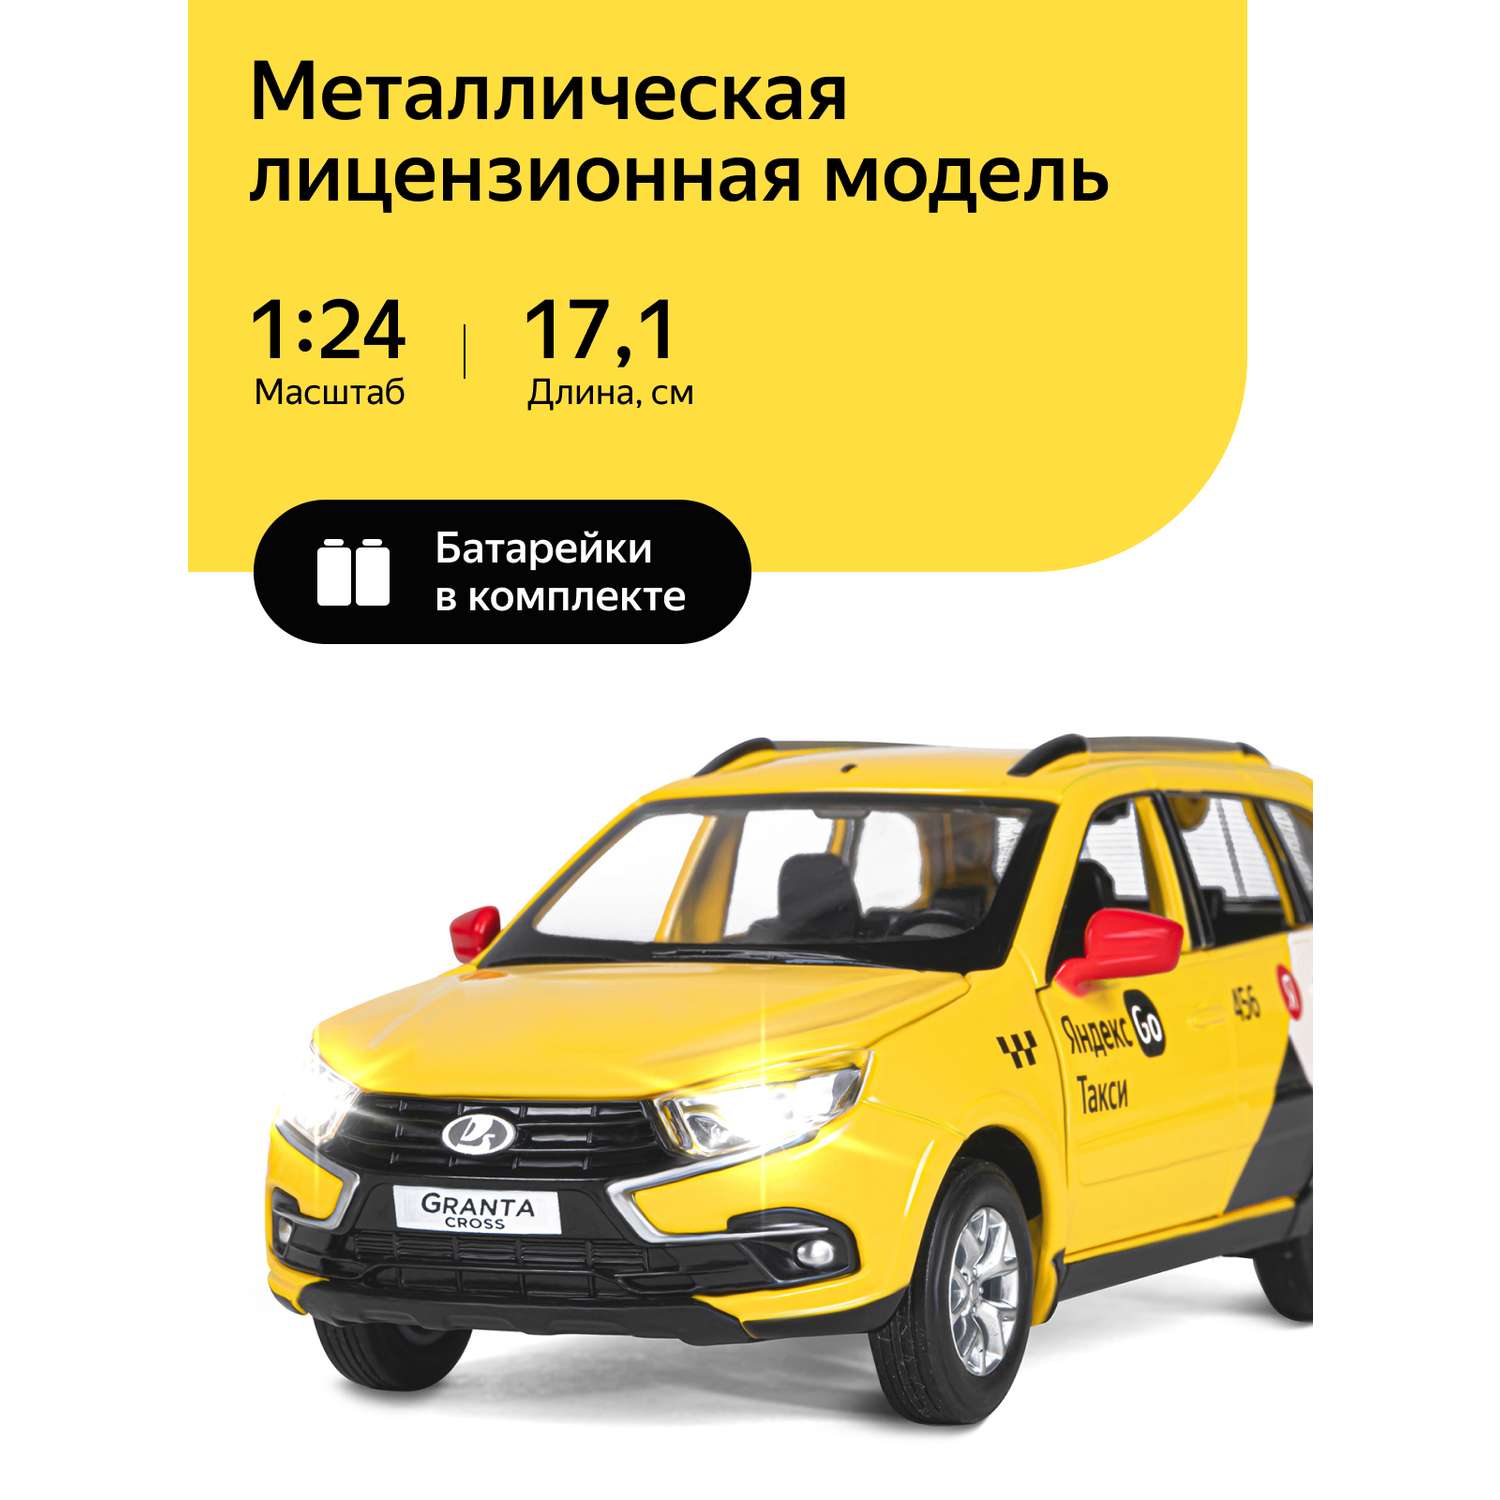 Машинка металлическая Яндекс GO игрушка детская 1:24 Lada Granta Cros желтый инерционная JB1251347/Яндекс GO - фото 1